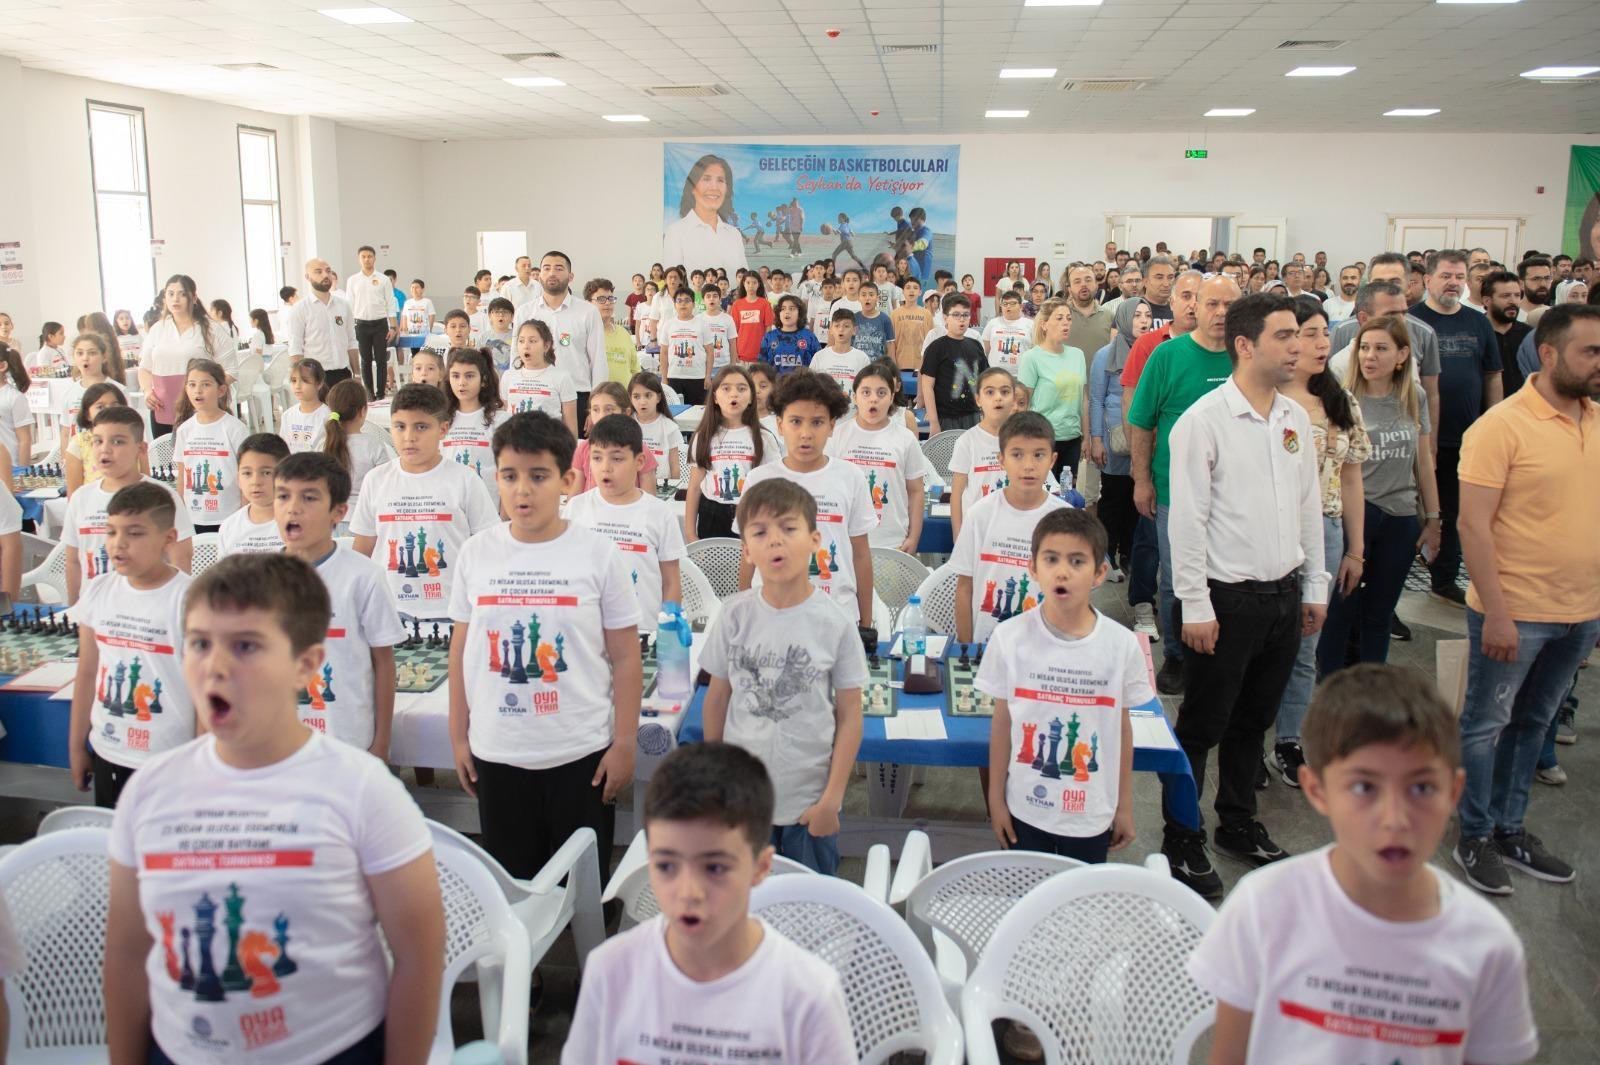 阿达纳新闻 - 454 名运动员参加了塞伊汉市 4 月 23 日举行的国际象棋锦标赛